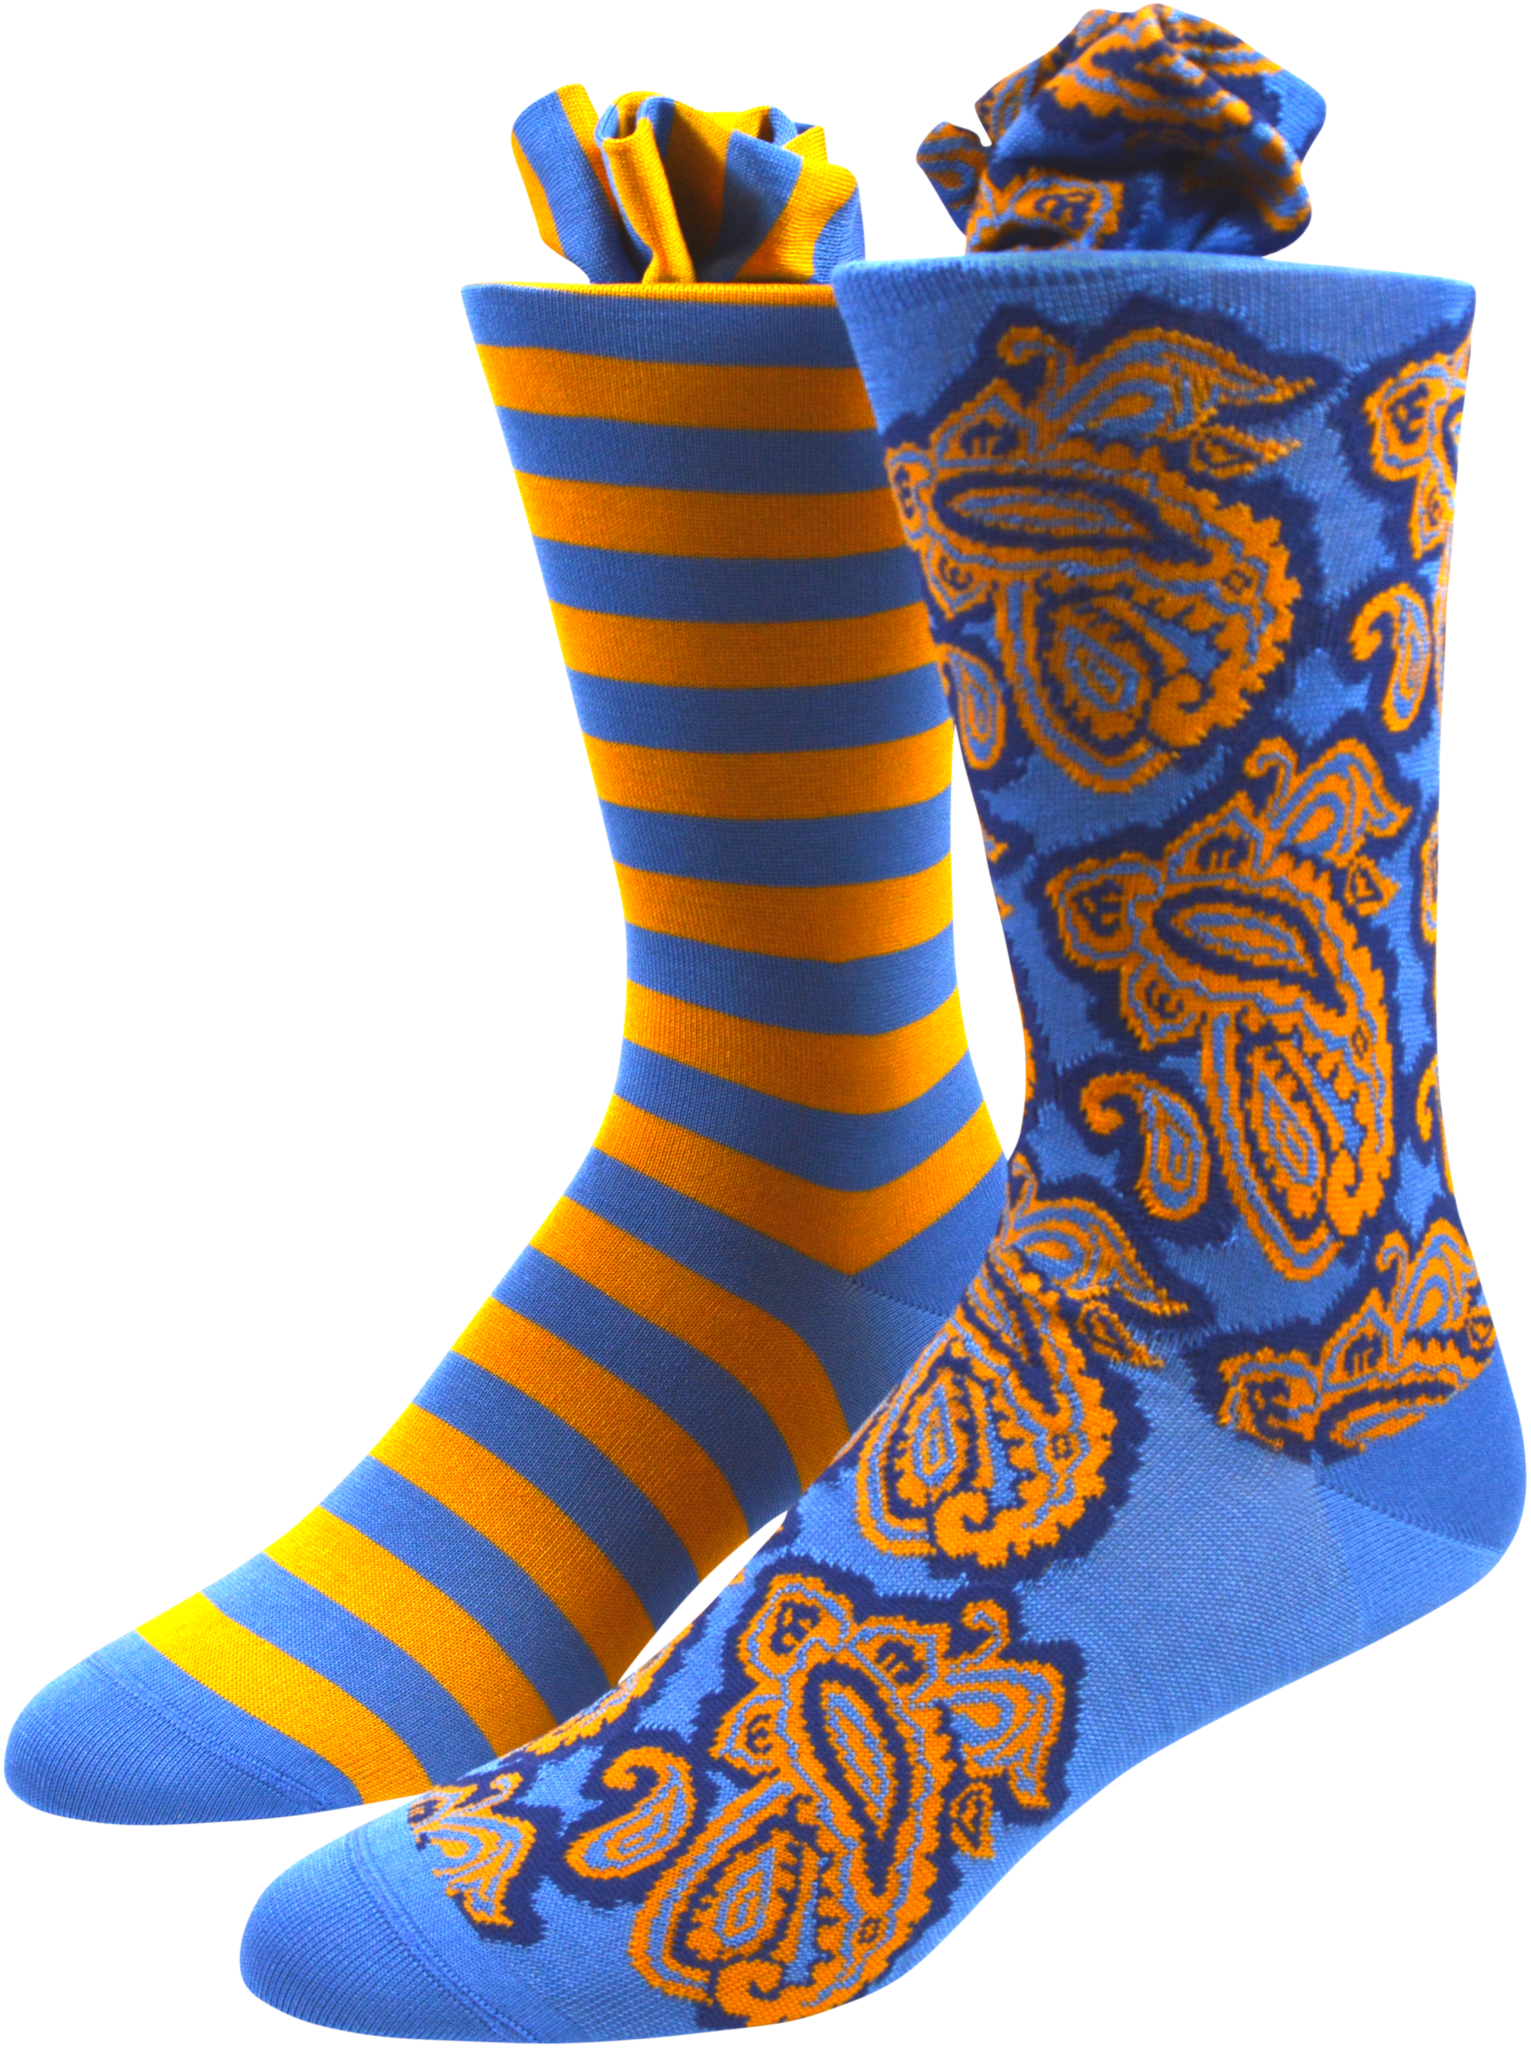 Socks patterned sock